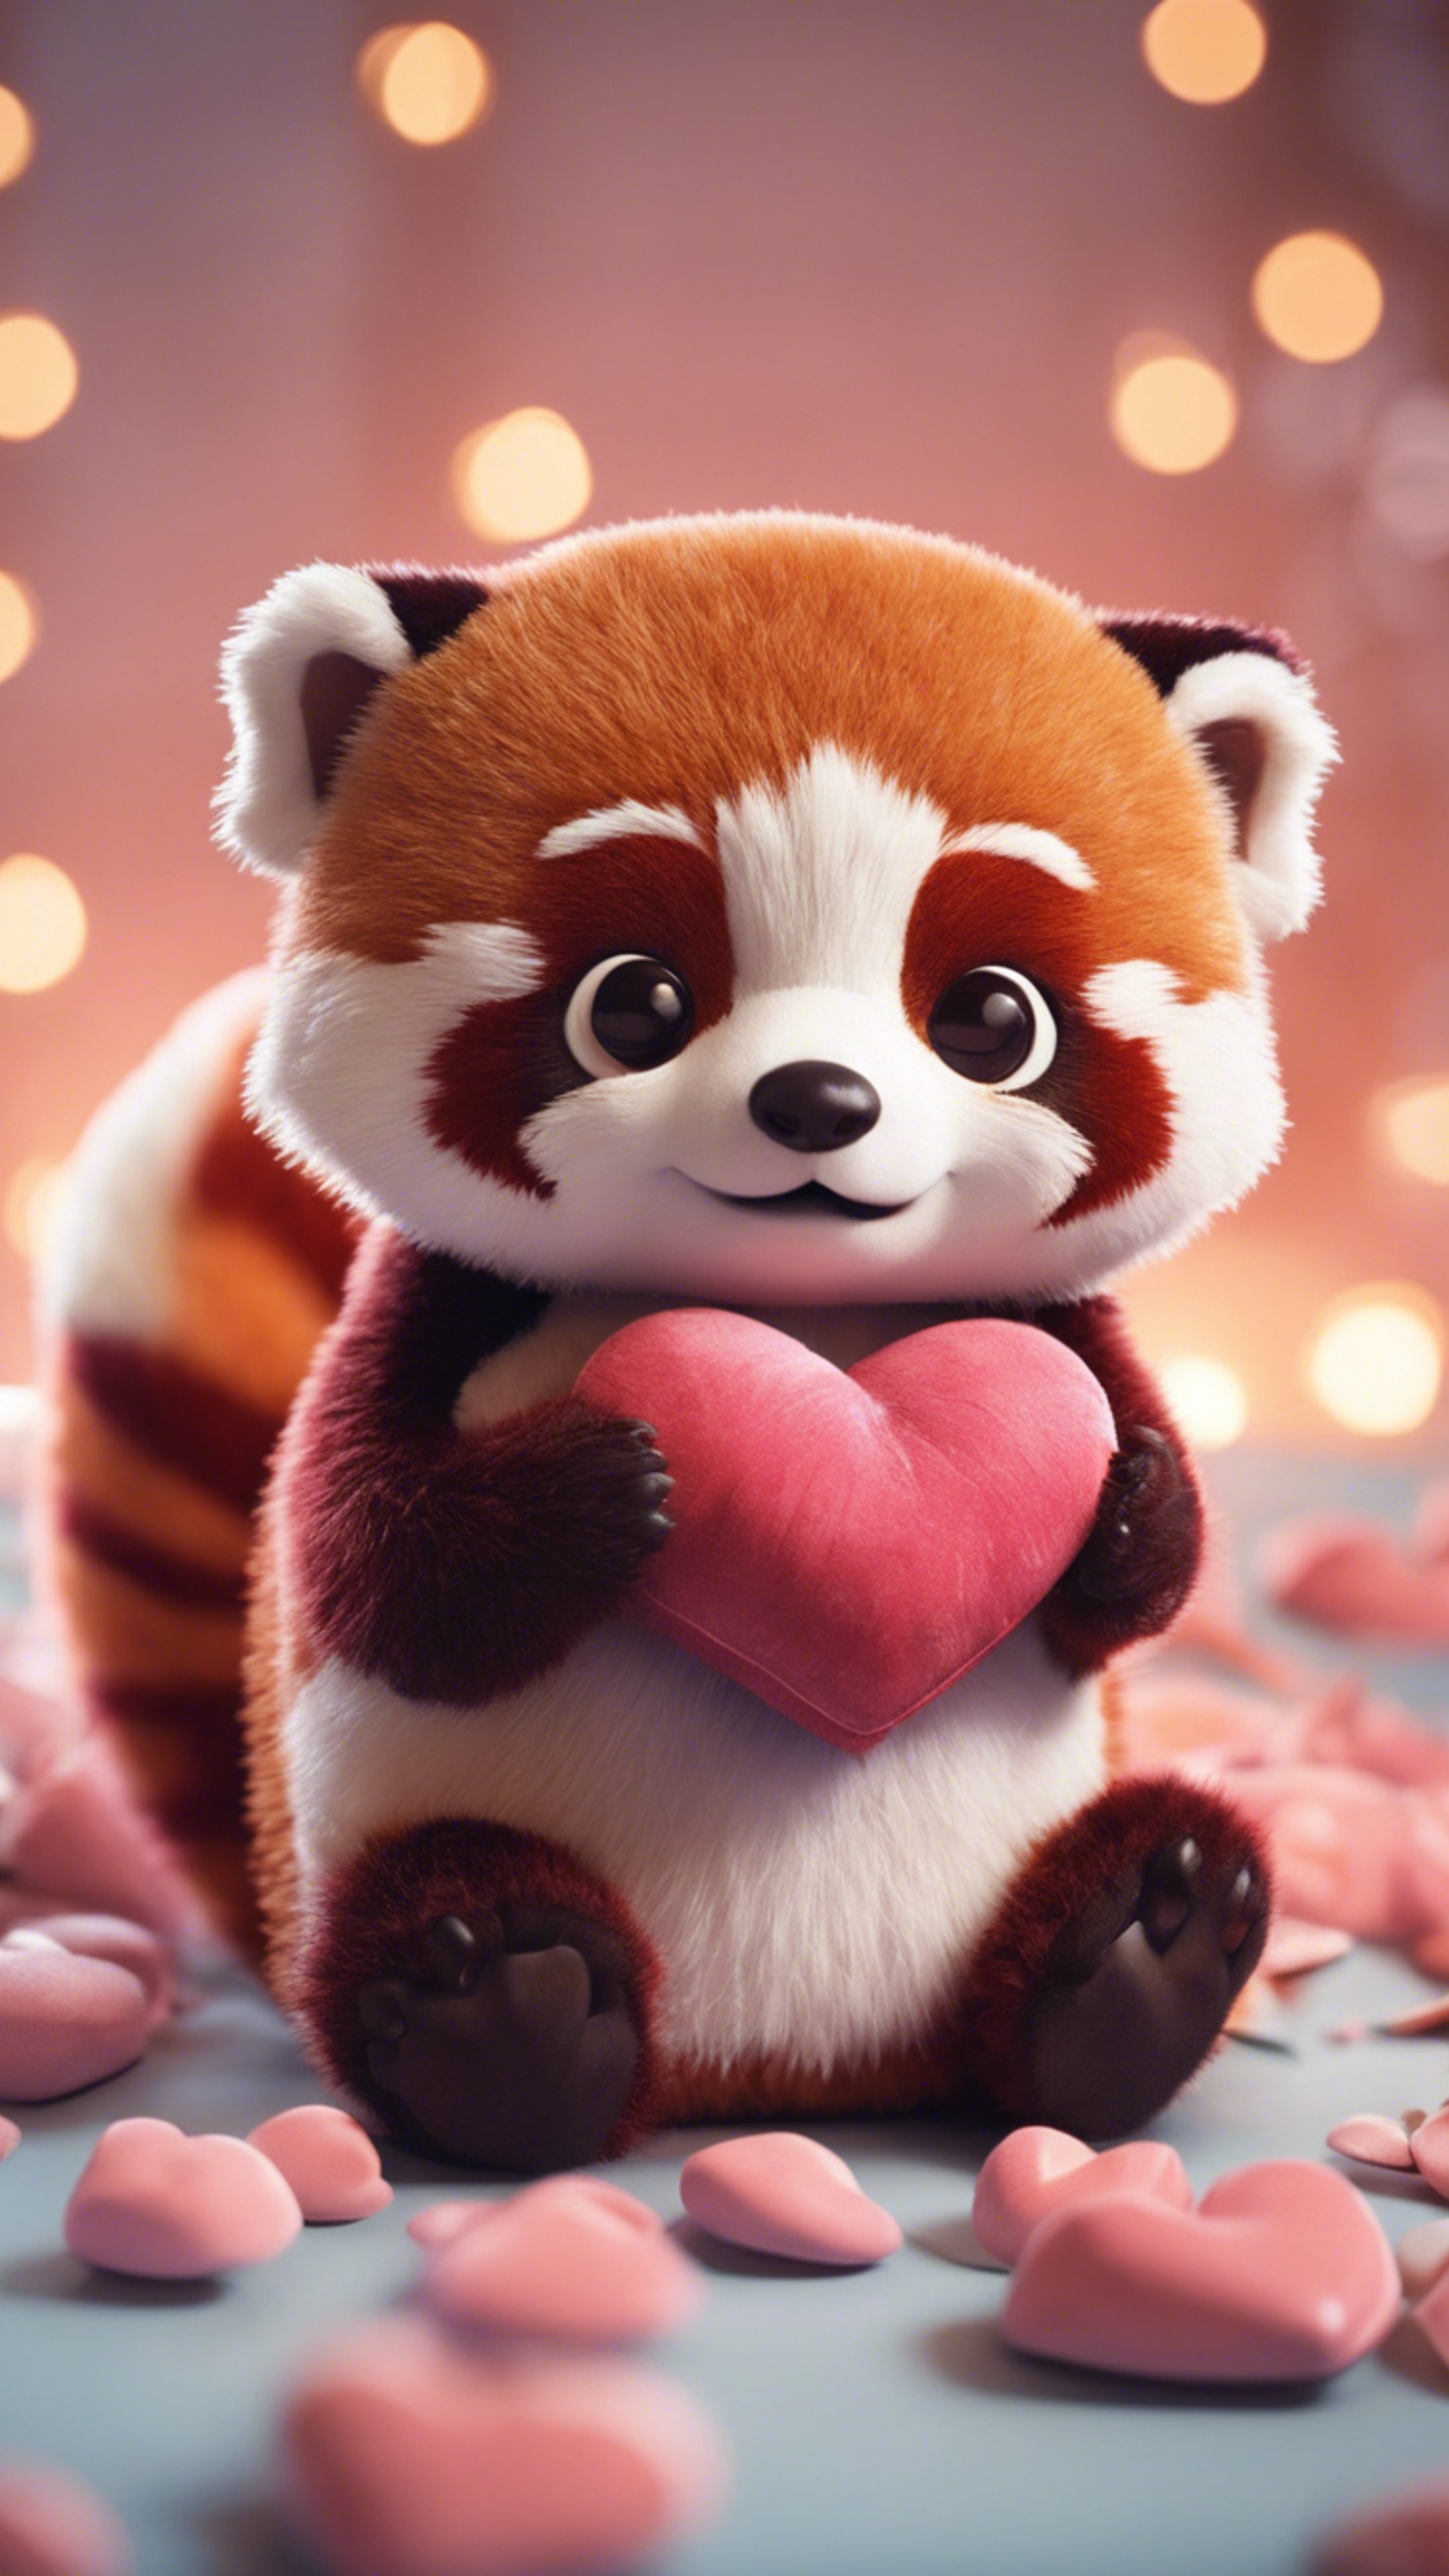 A kawaii red panda, wide-eyed, hugging a heart-shaped pillow. Tapet[45d6f15b7fce49d58985]